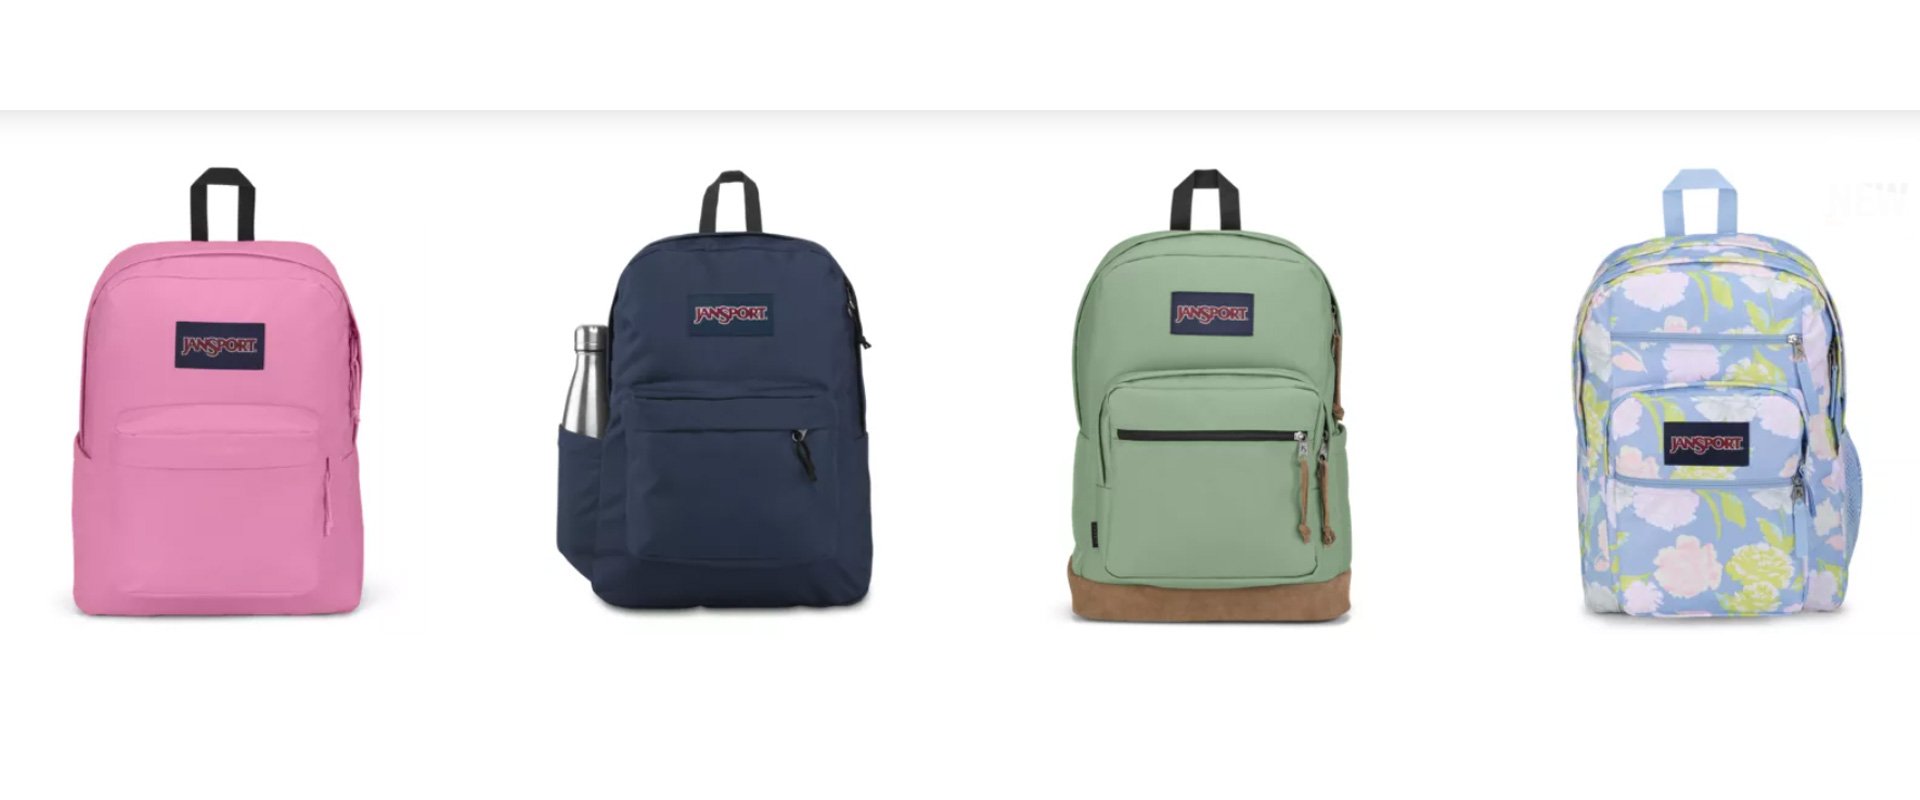 JanSport-backpack-design